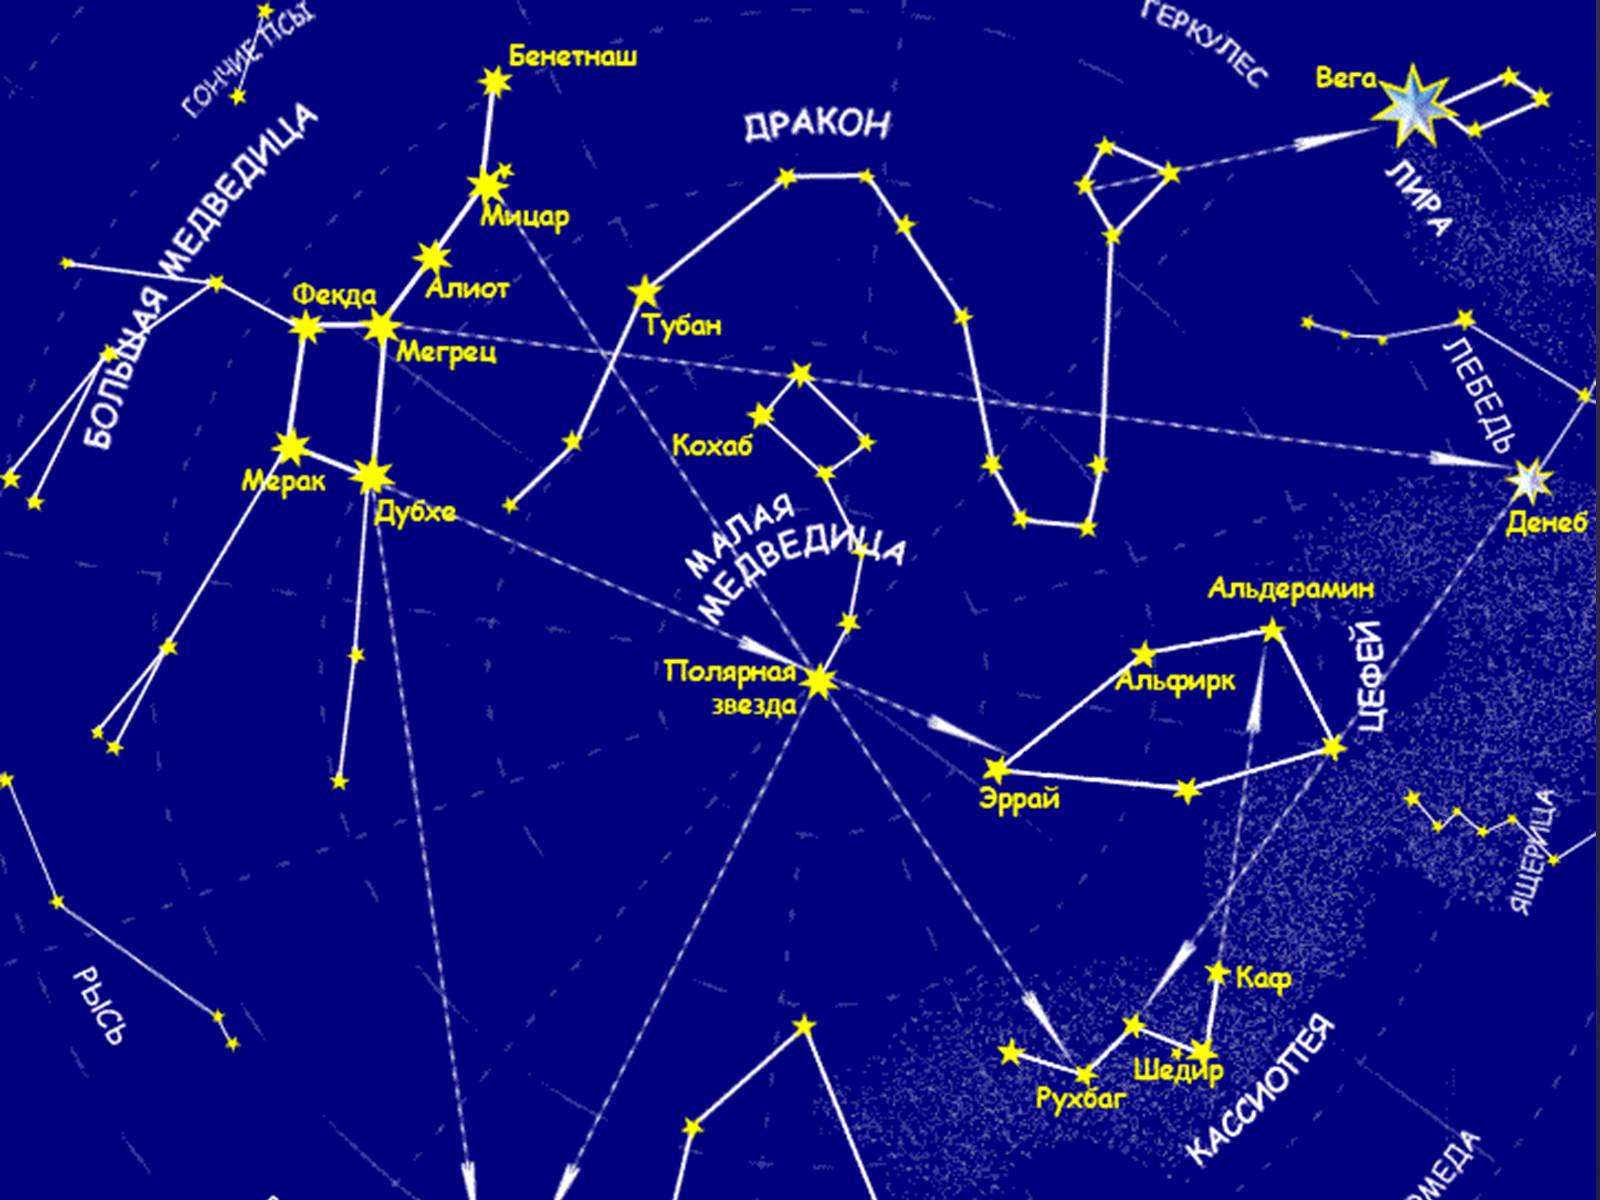 Февраль созвездие. Звездная карта созвездия. Карта звездного неба с названиями созвездий большая Медведица. Карта звёздного неба Северное полушарие большая Медведица. Околополярные незаходящие созвездия.